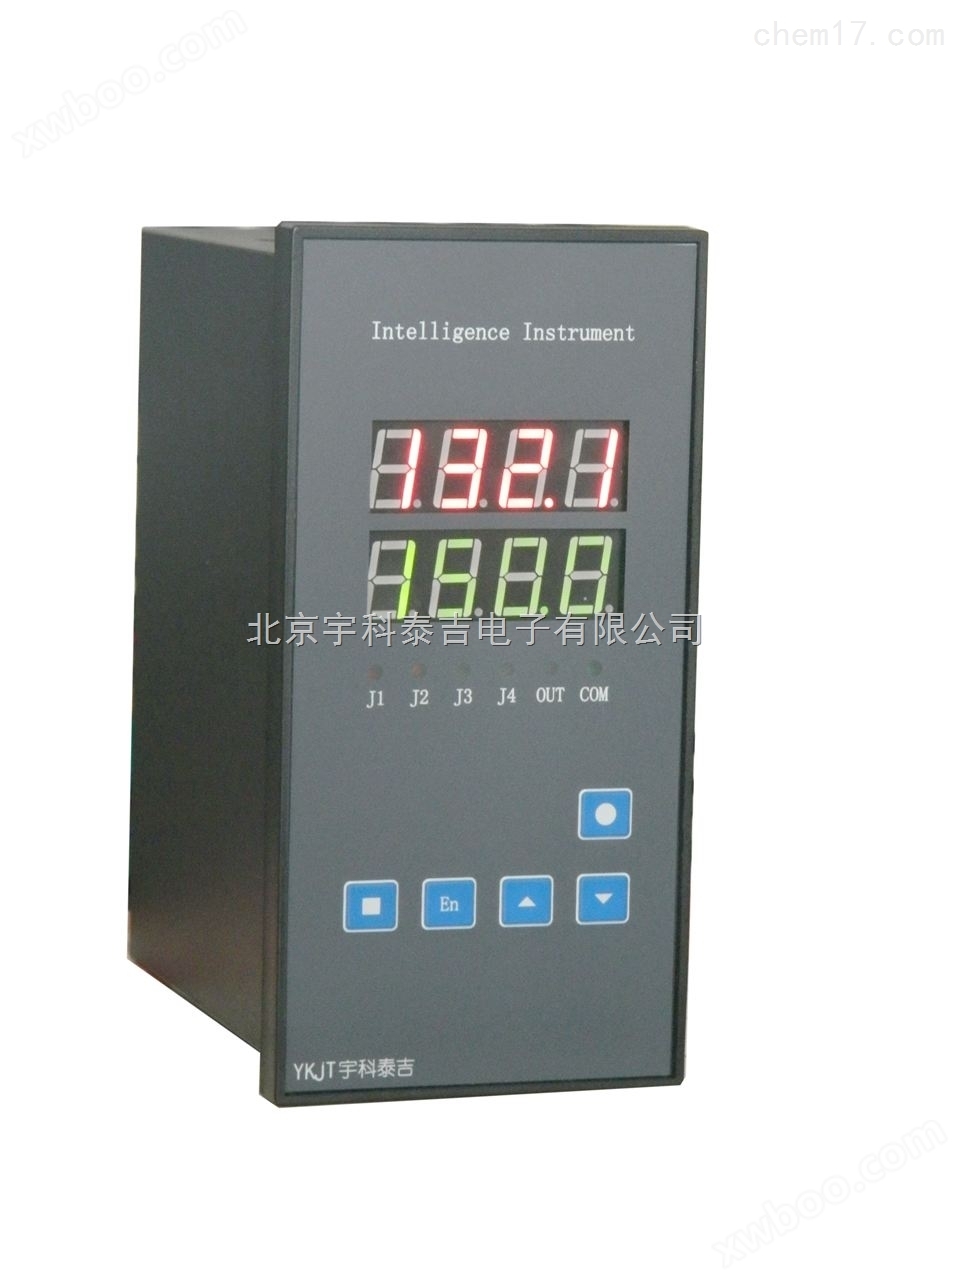 宇科泰吉YK-11A-J2-R-P100智能温度数显RS232通讯测控仪